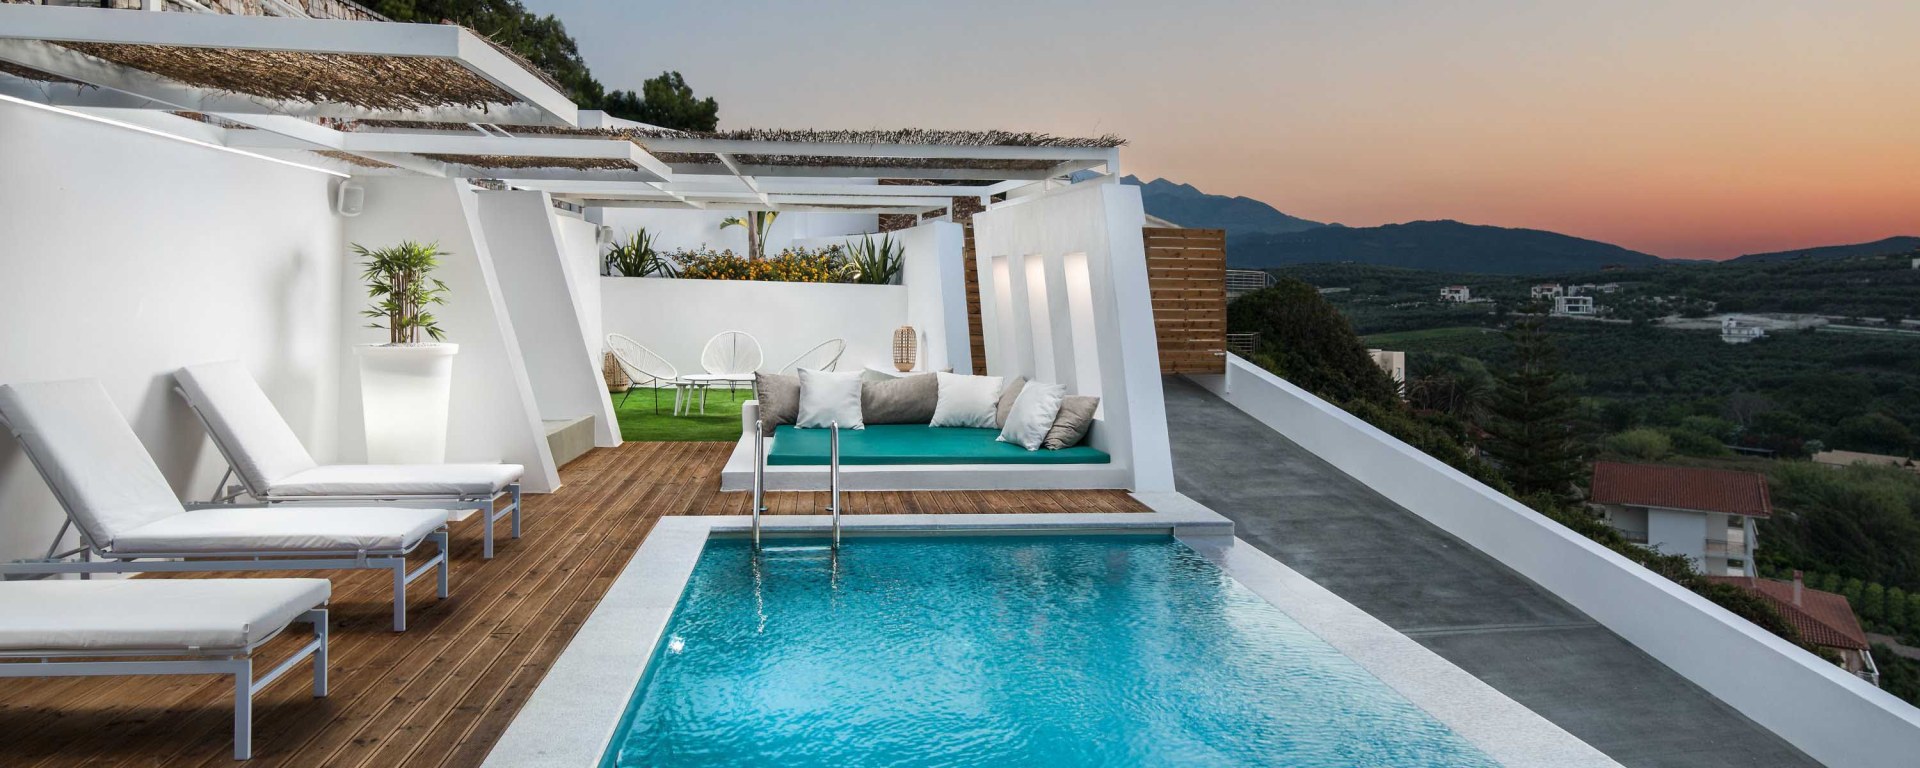 Modernes Ferienhaus Kreta Mieten - Villa Modern Chania